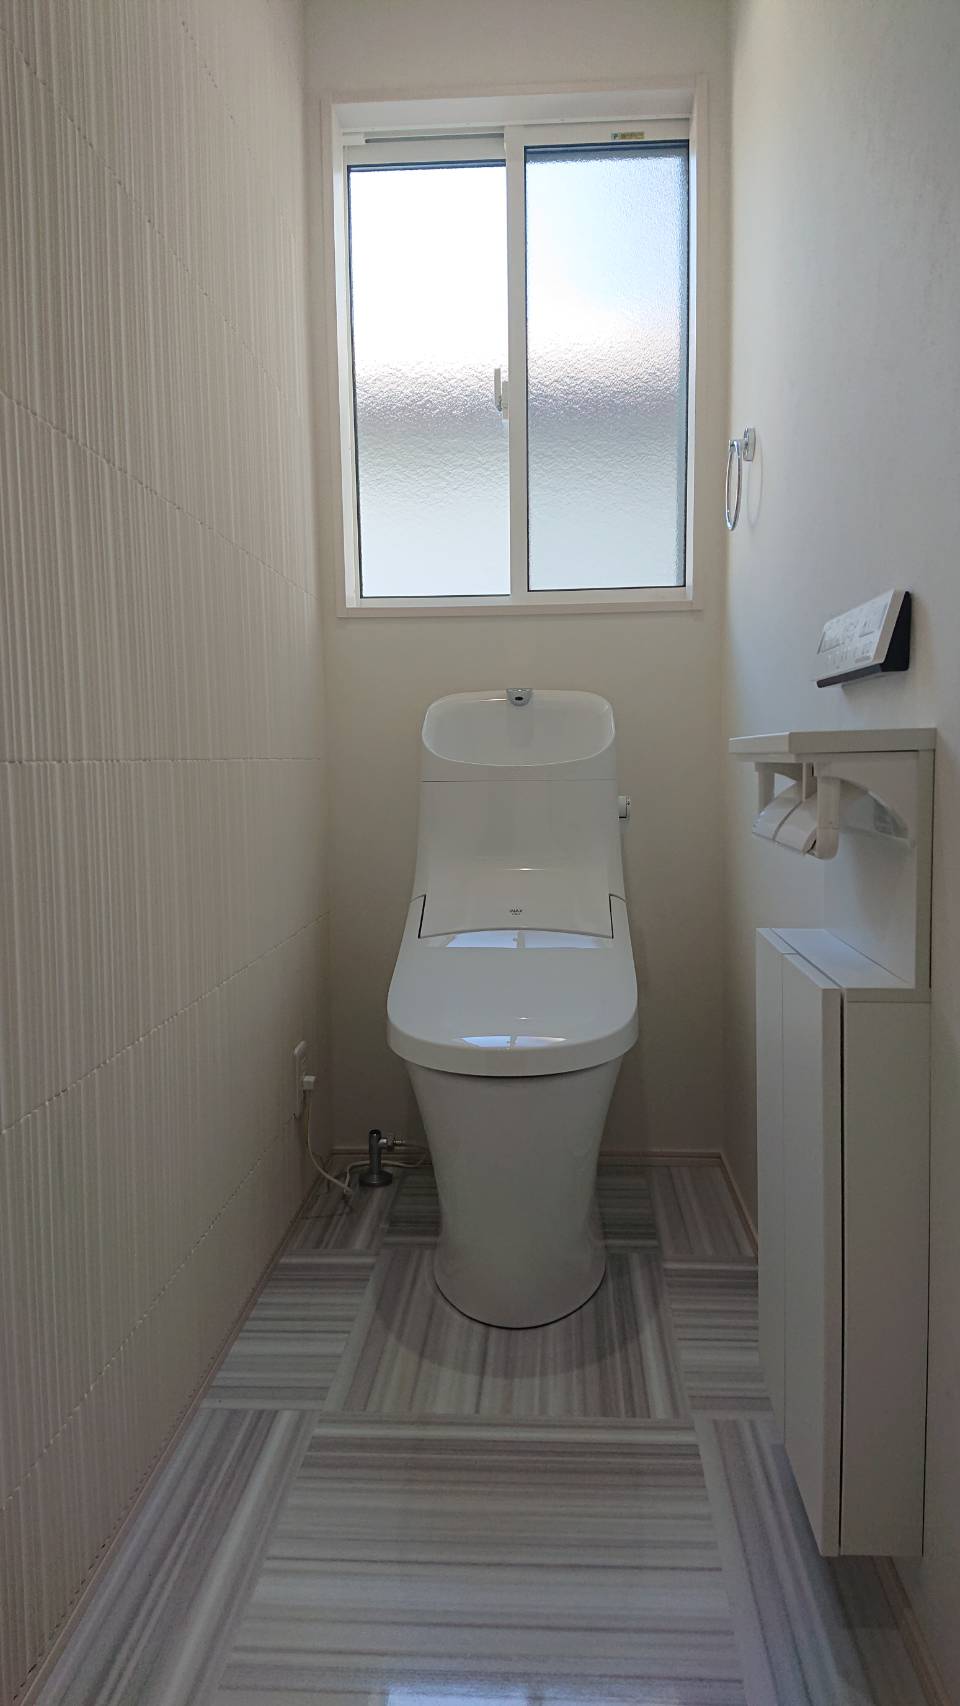 新築トイレのエコカラット仕様です 和歌山市 壁紙 フローリング張替えは かべがみマイスター インテリア津田まで